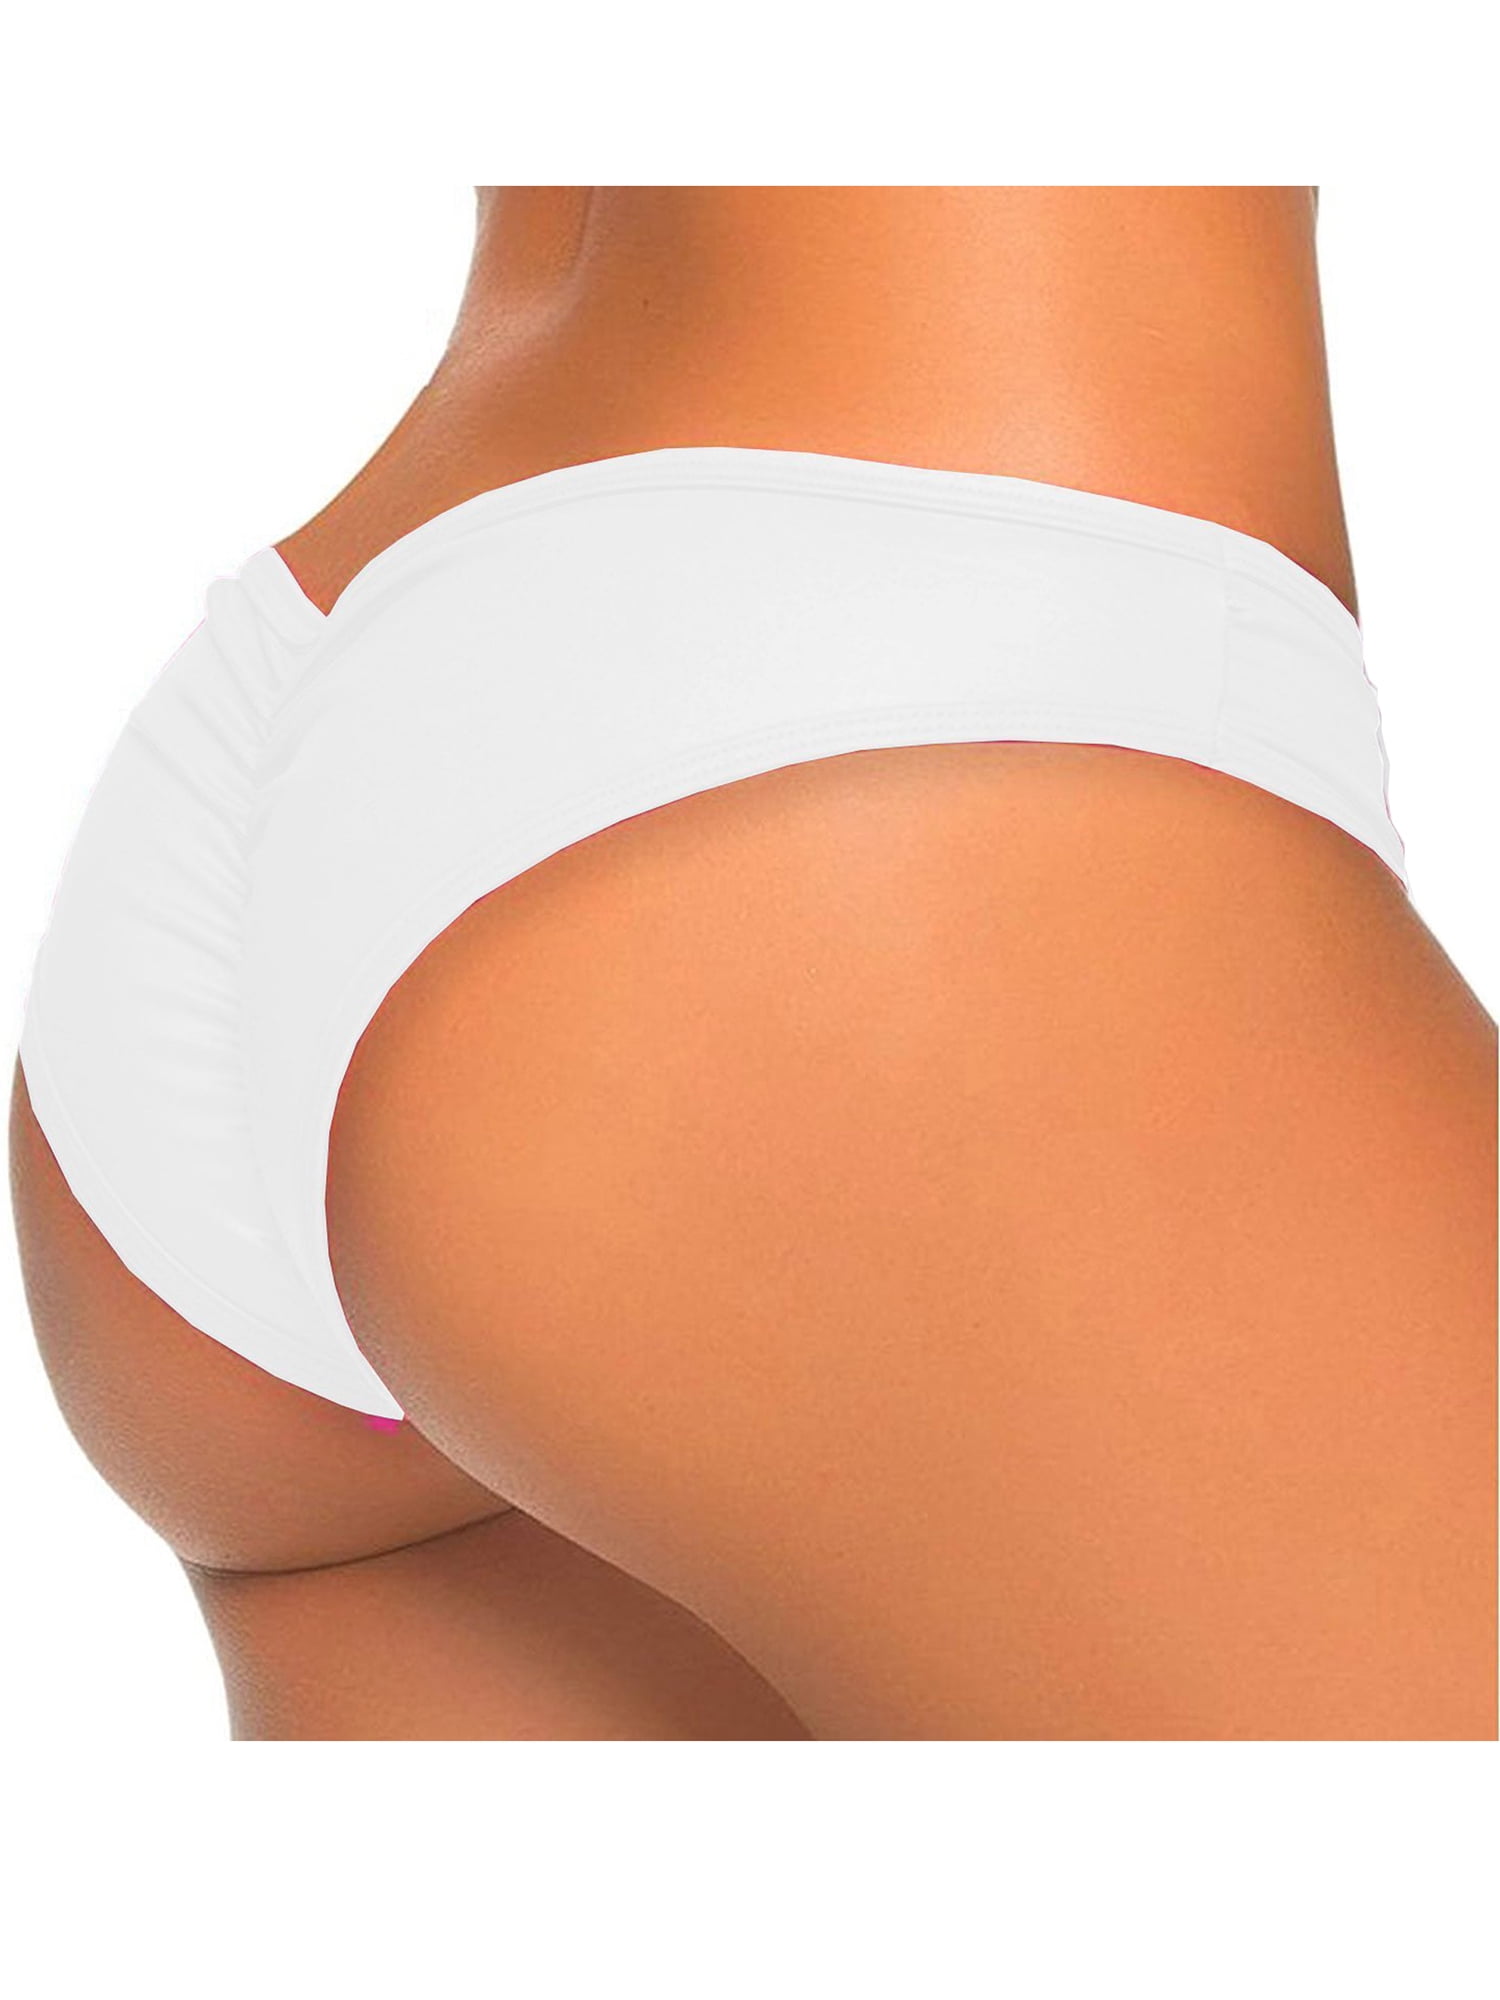 Women's Thong Brazilian Swim Bottoms Low Waist Ruched Bikini Elastic Hot Panties 